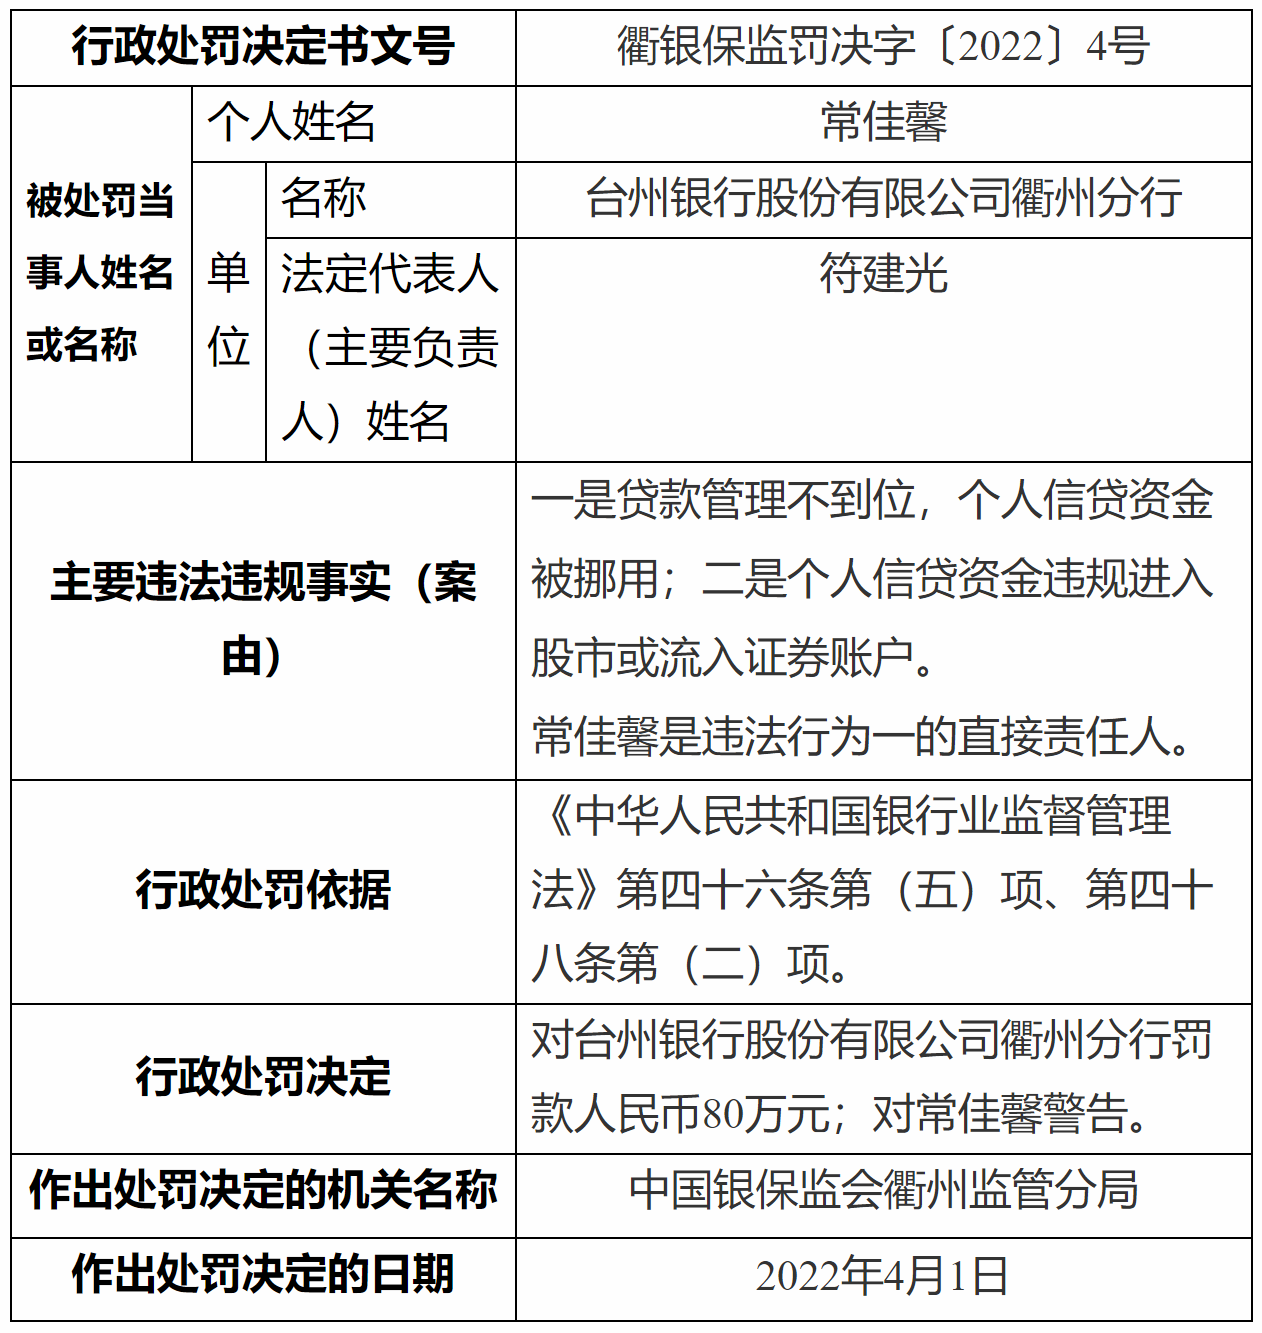 (截图自银保监会网站)行政处罚信息公开表显示,台州银行衢州分行存在